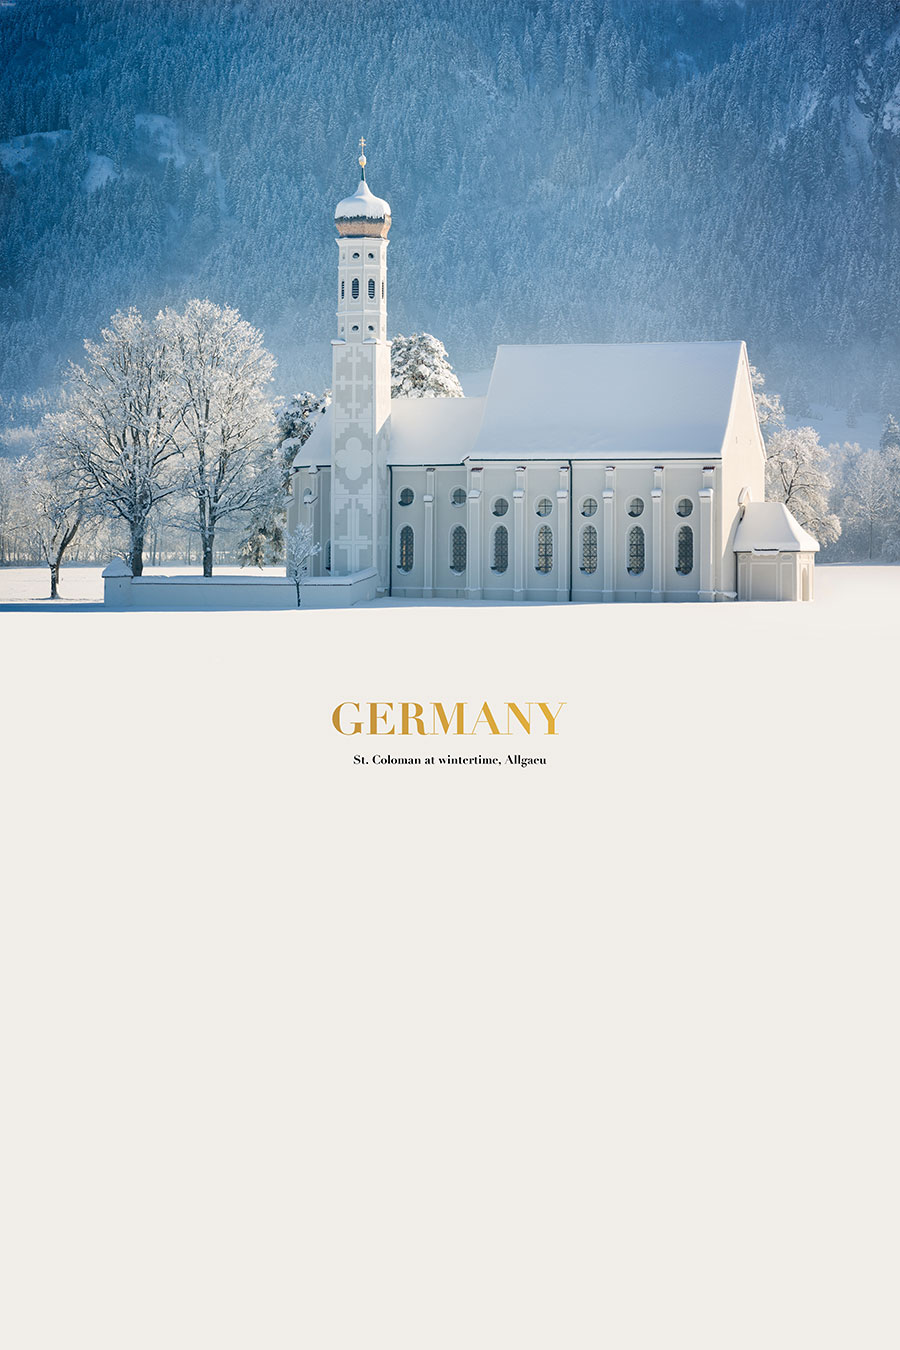 冰雪之颠: 唯美德国圣克罗曼教堂雪景, 雪景下的建筑摄影